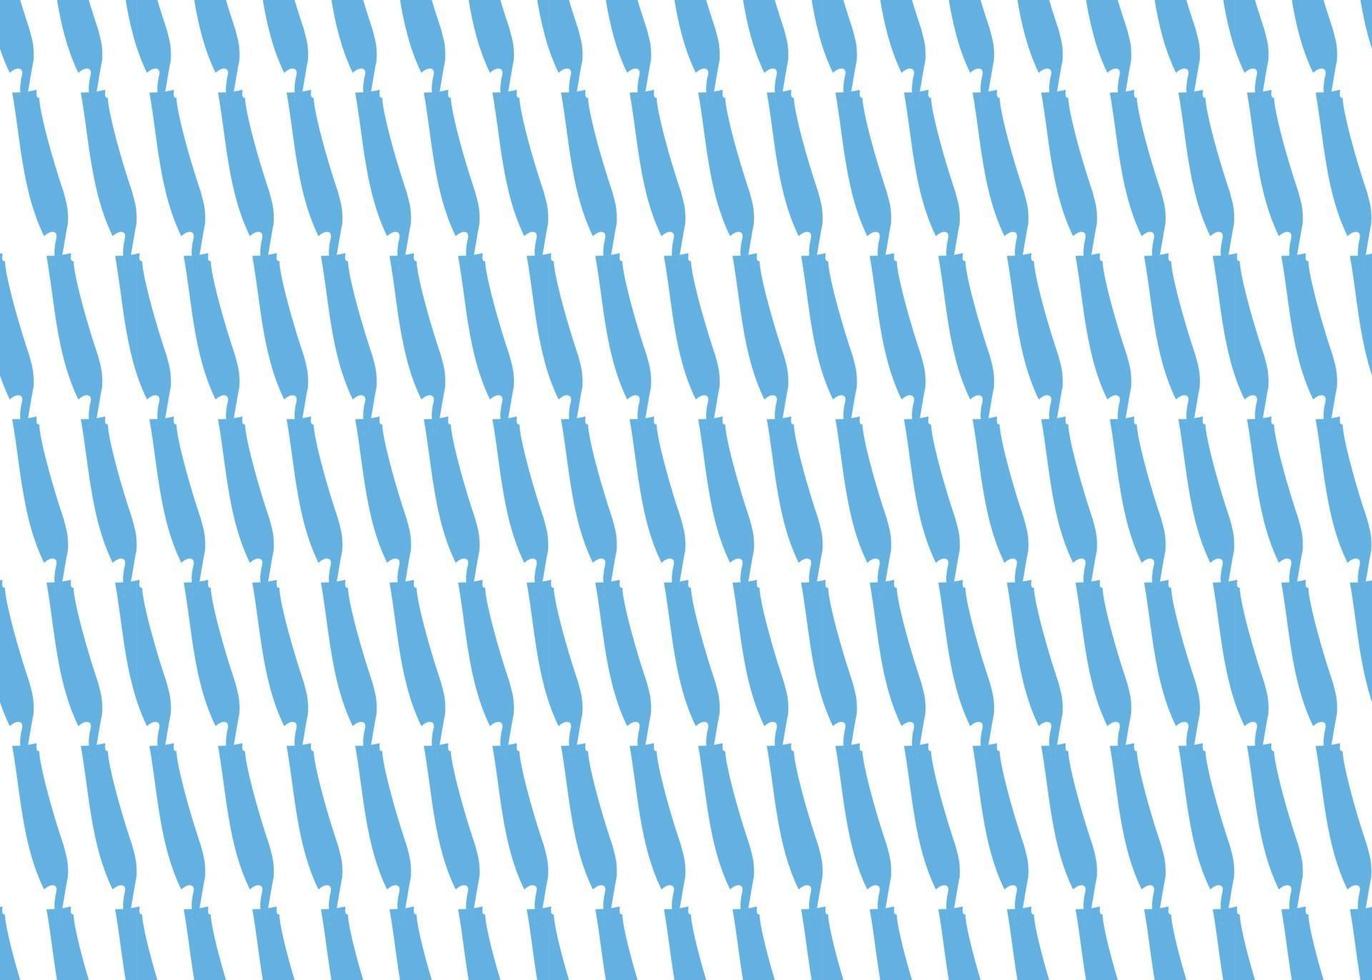 dibujado a mano, azul, líneas de color blanco de patrones sin fisuras vector